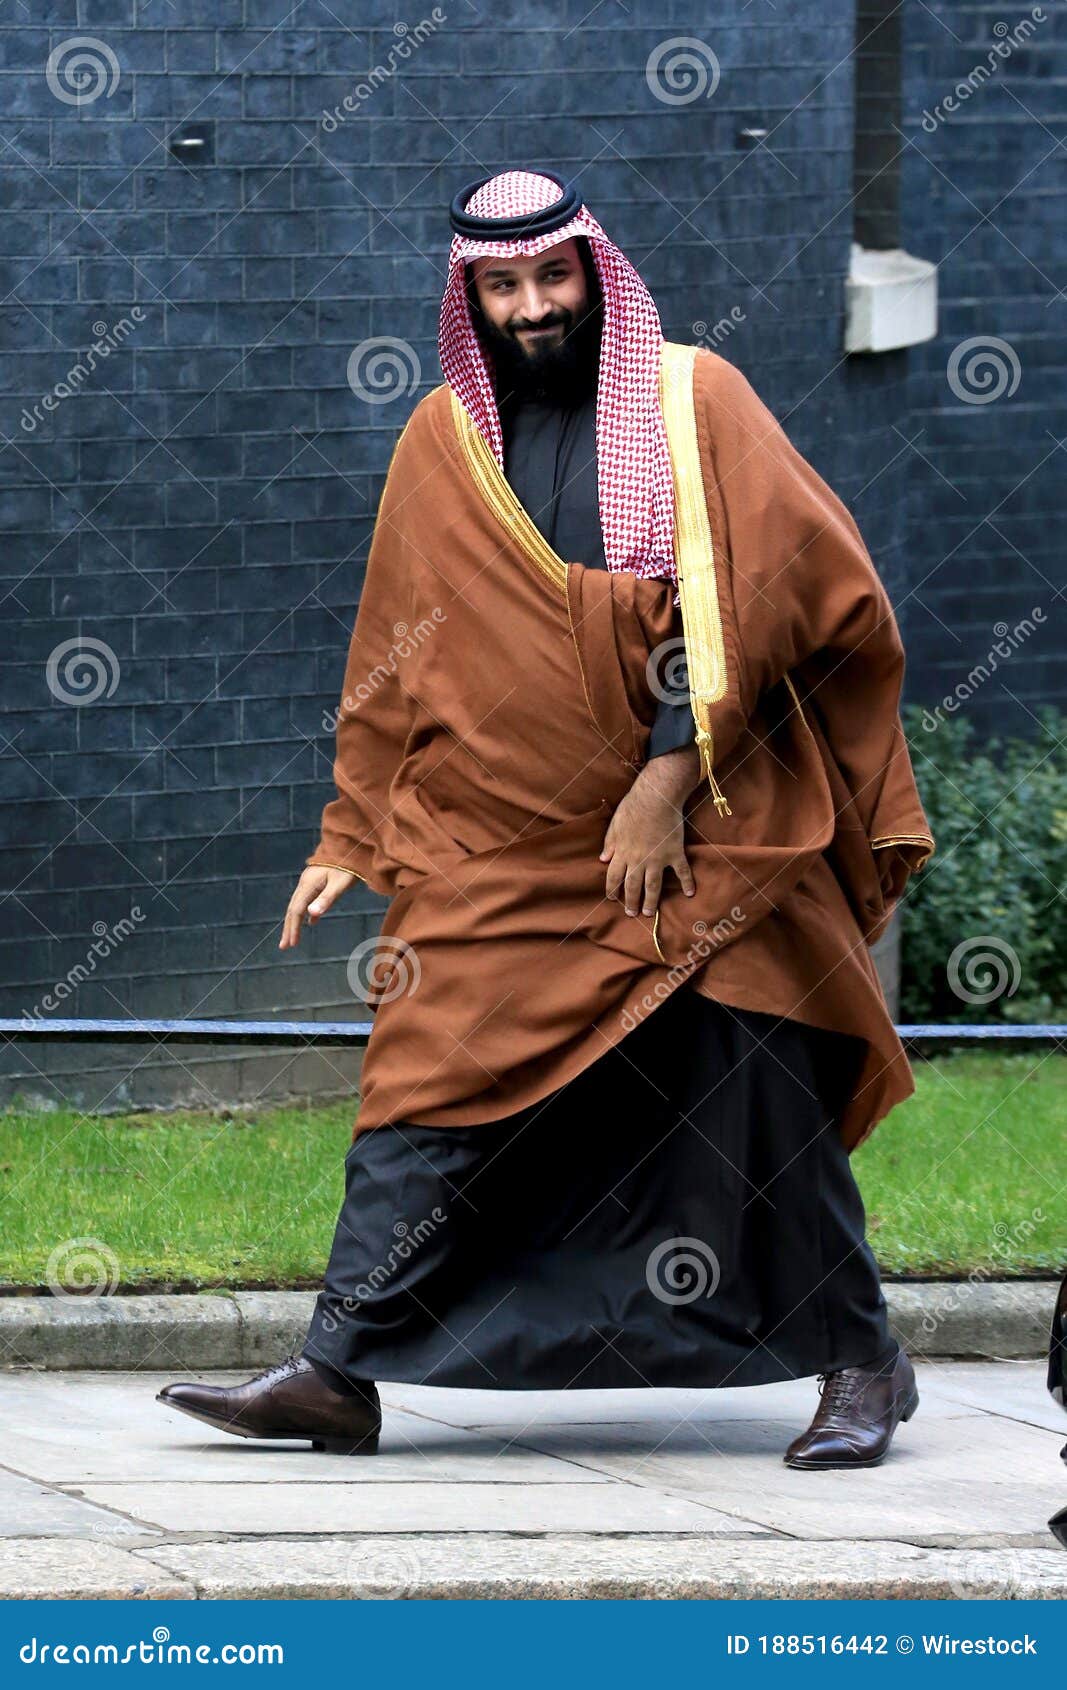 Aziz saud abdul bin Muqrin Bin